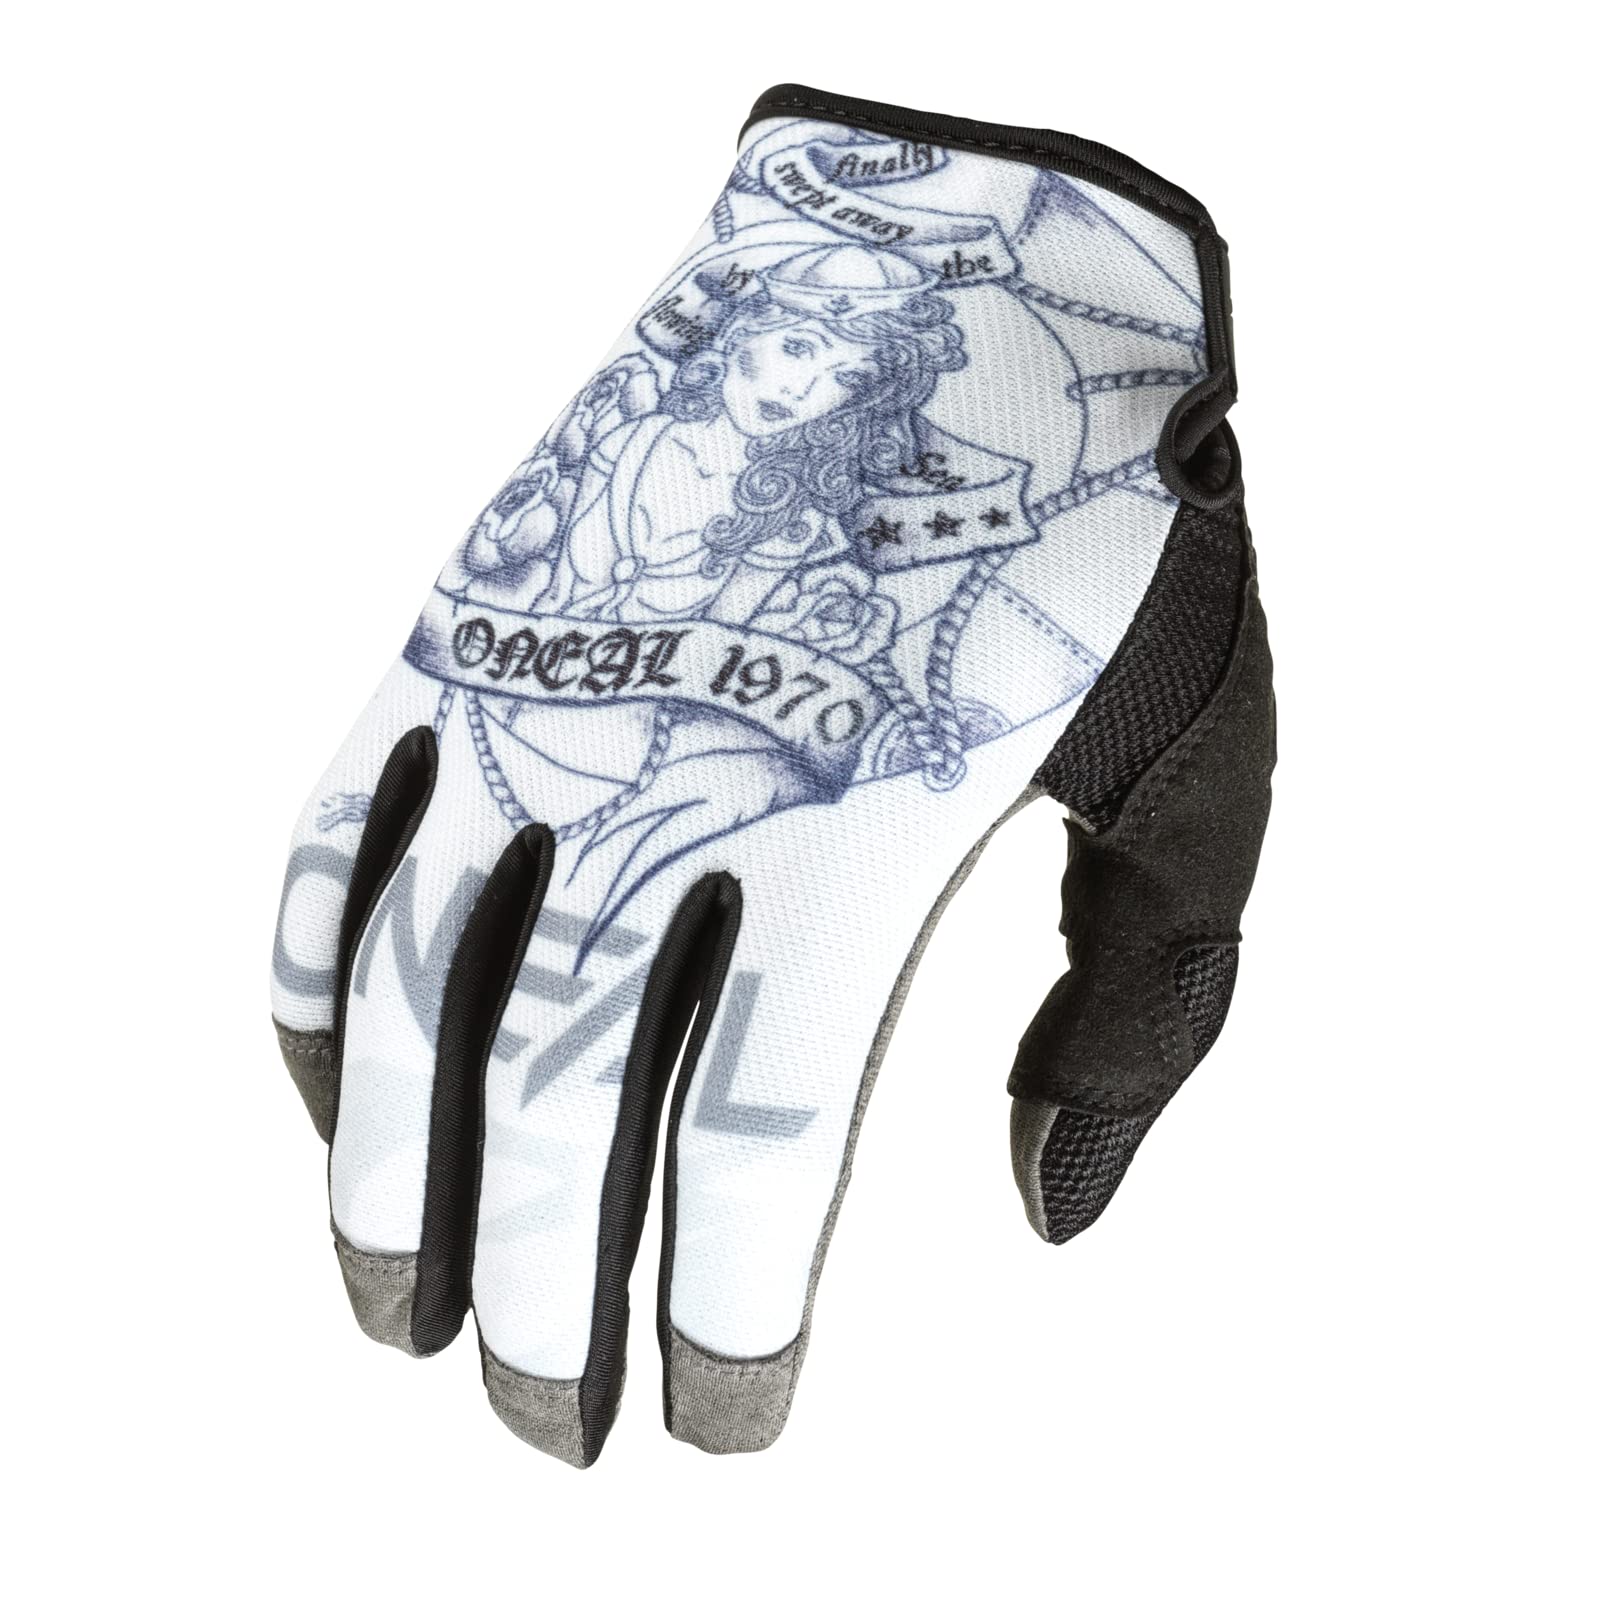 O'NEAL | Fahrrad- & Motocross-Handschuhe | MX MTB DH FR Downhill Freeride | Langlebige, Flexible Materialien, belüftete Nanofront-Handpartie | Mayhem Glove Sailor V.22 | Erwachsene | Weiß | Größe XL von O'NEAL